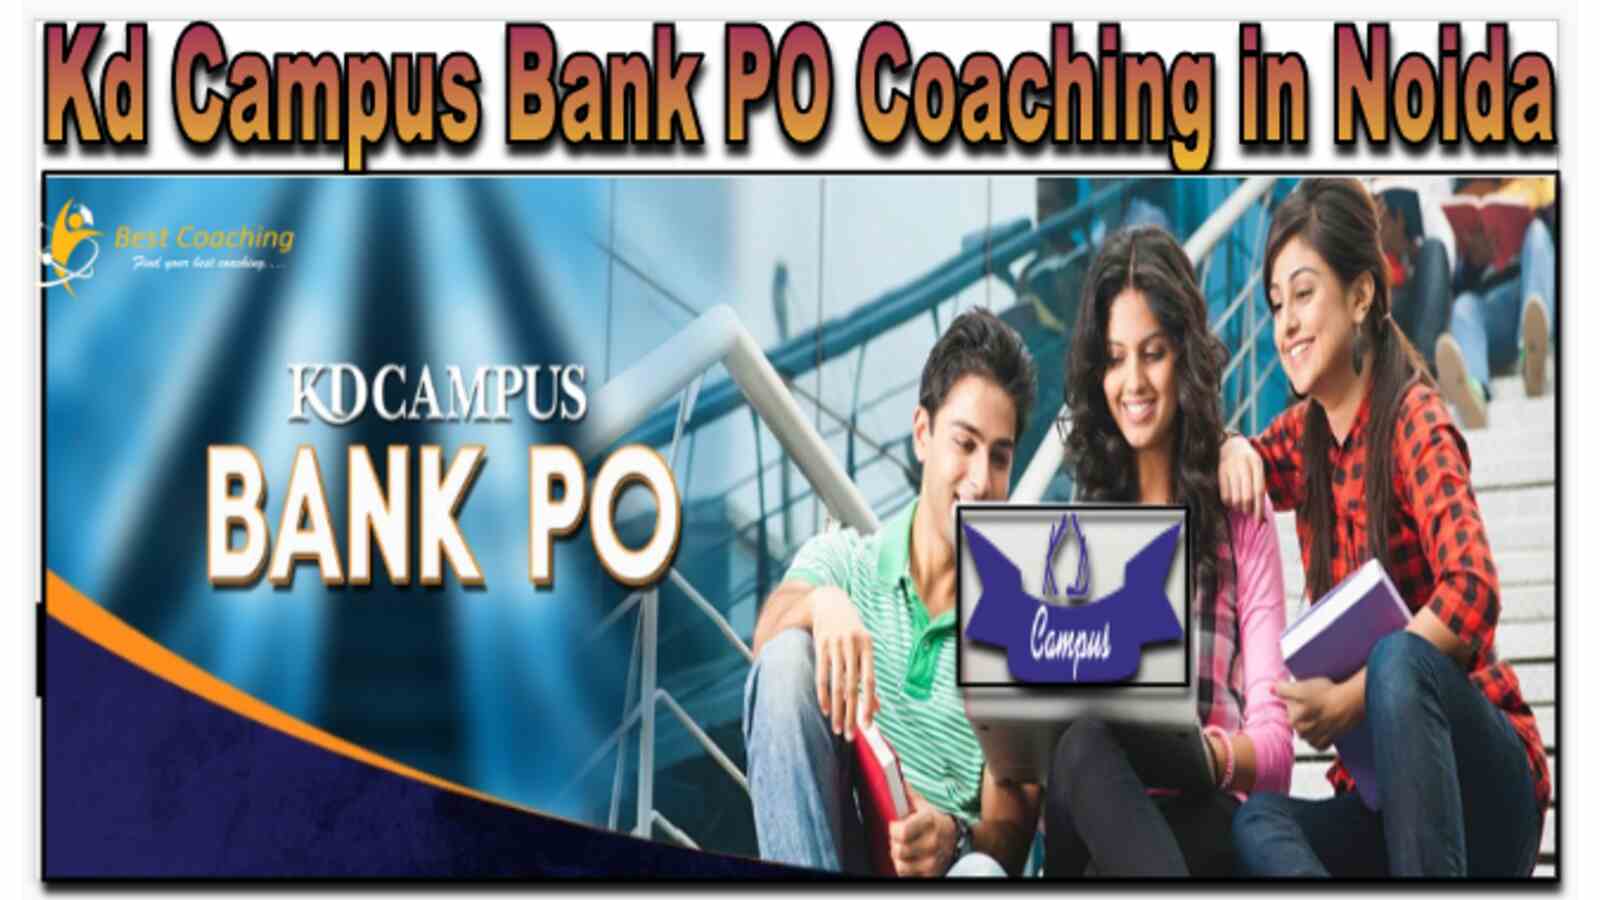 Kd Campus Bank PO Coaching in Noida